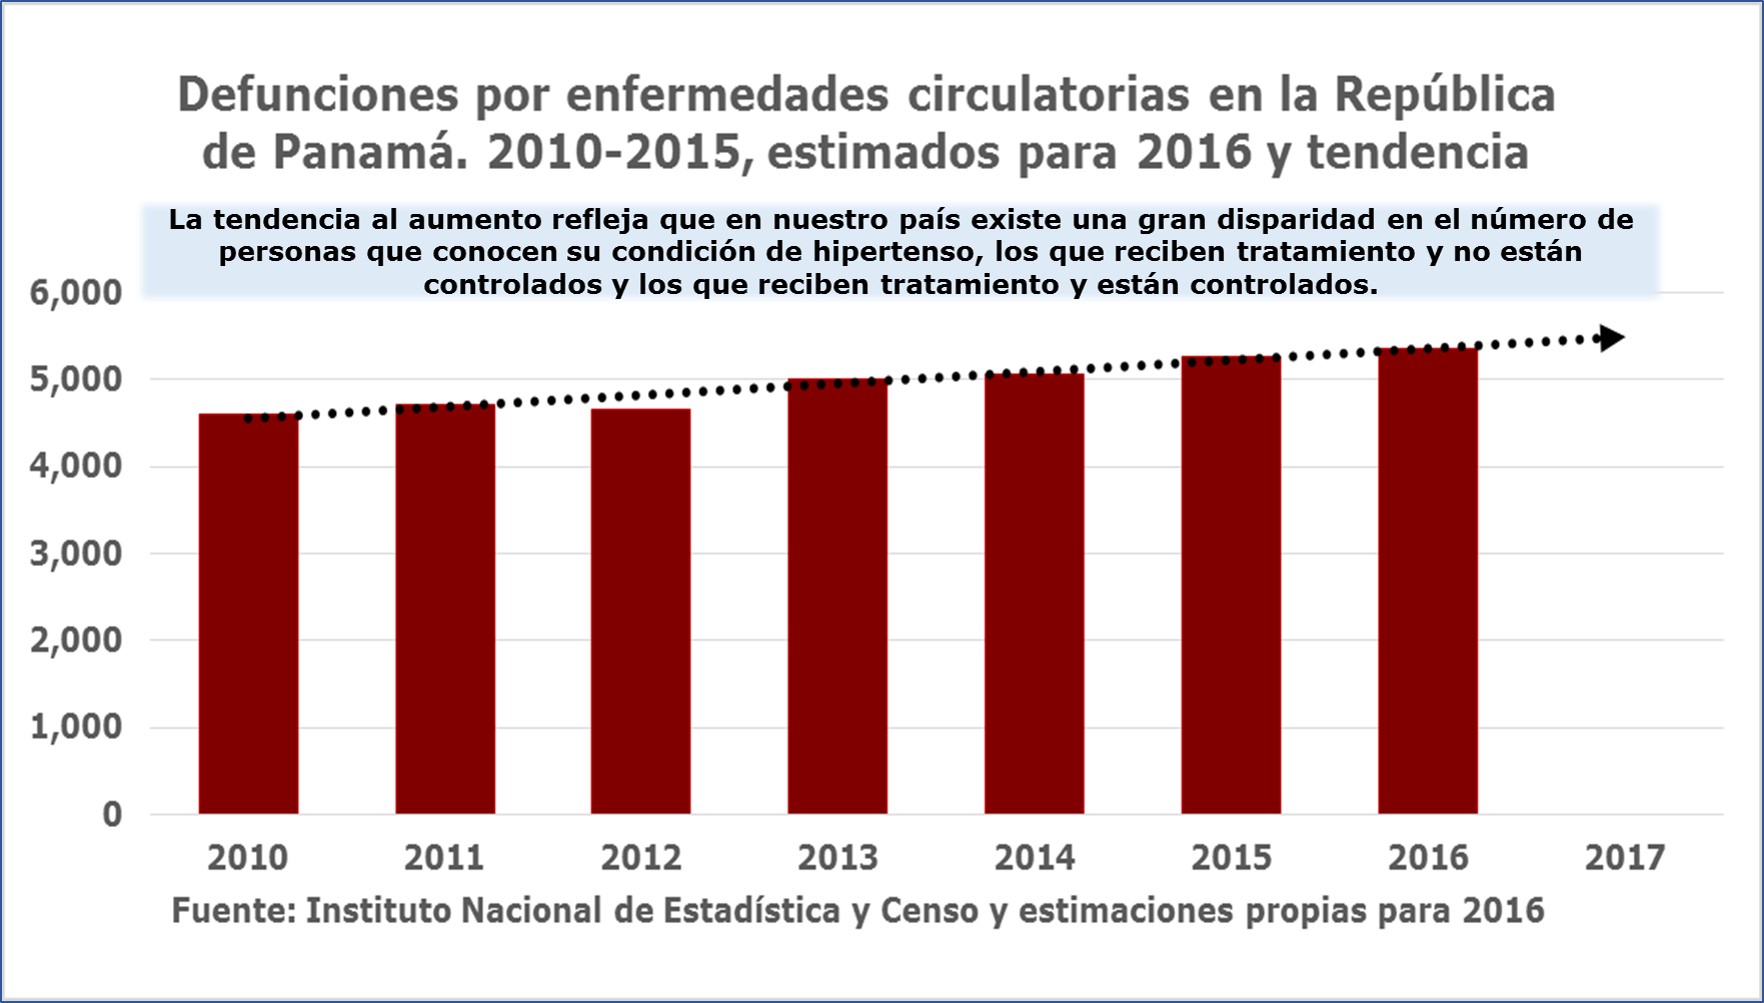 Cifras que reflejan la tendencia al aumento de la hipertensión arterial entre la población panameña.